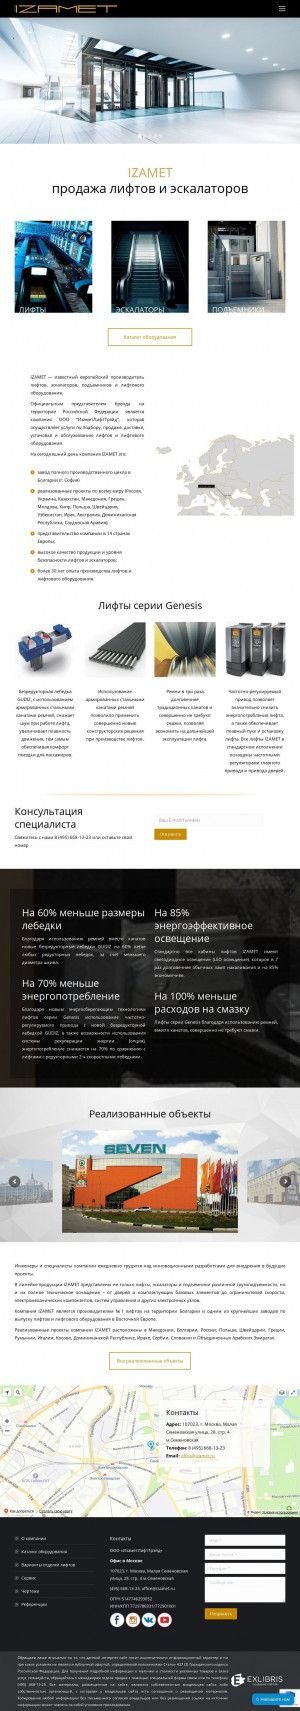 Предпросмотр для izamet-russia.ru — Транслифт